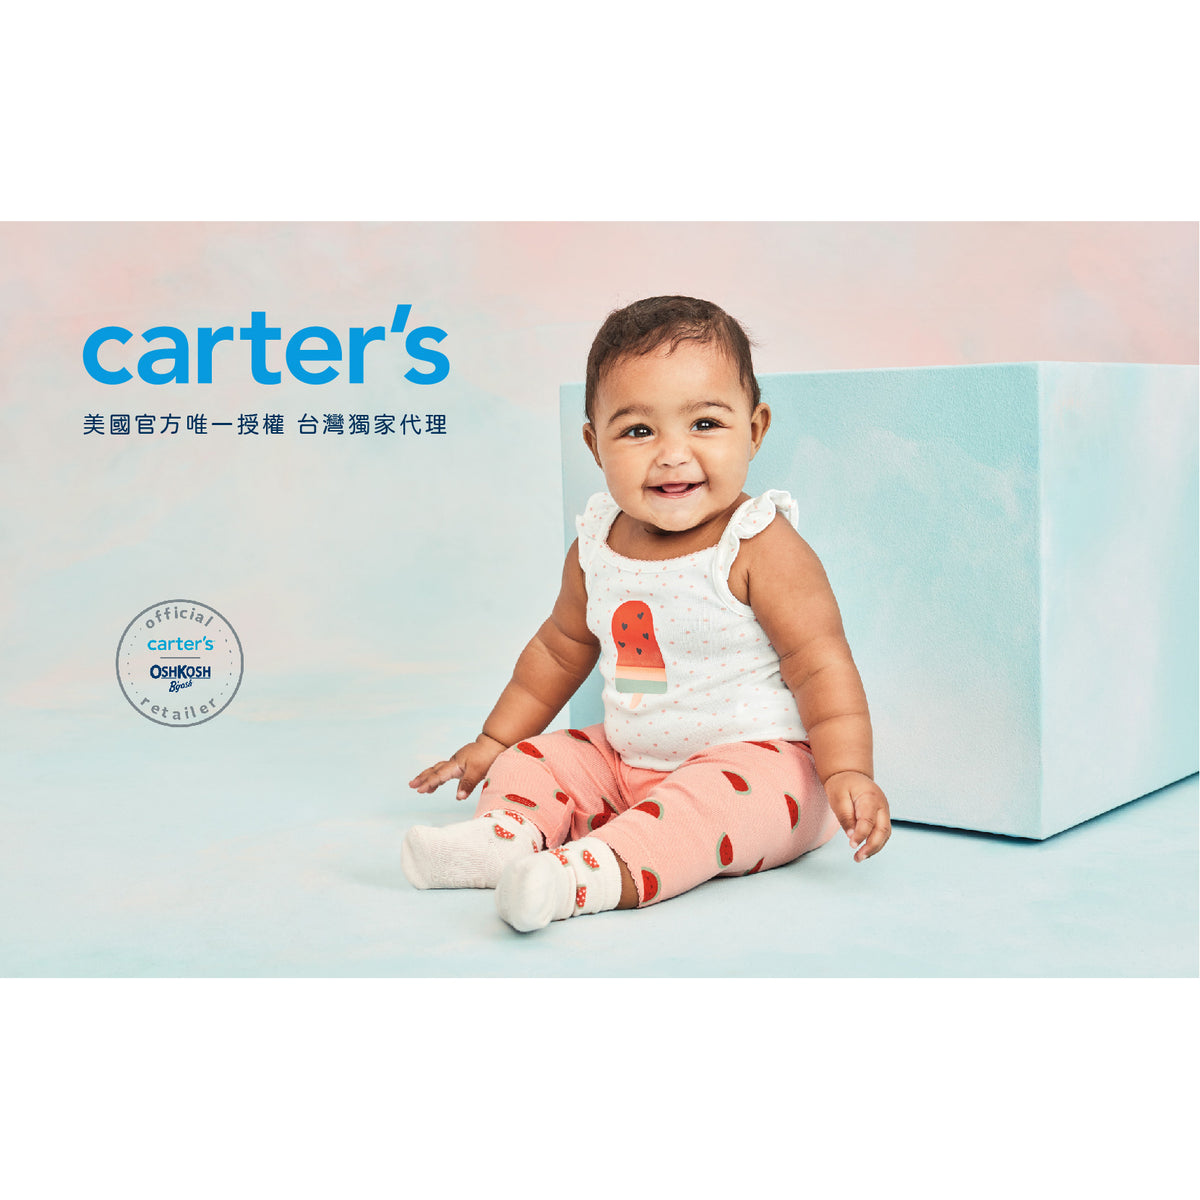 Carter's 柔美紫格外套(6M-24M)